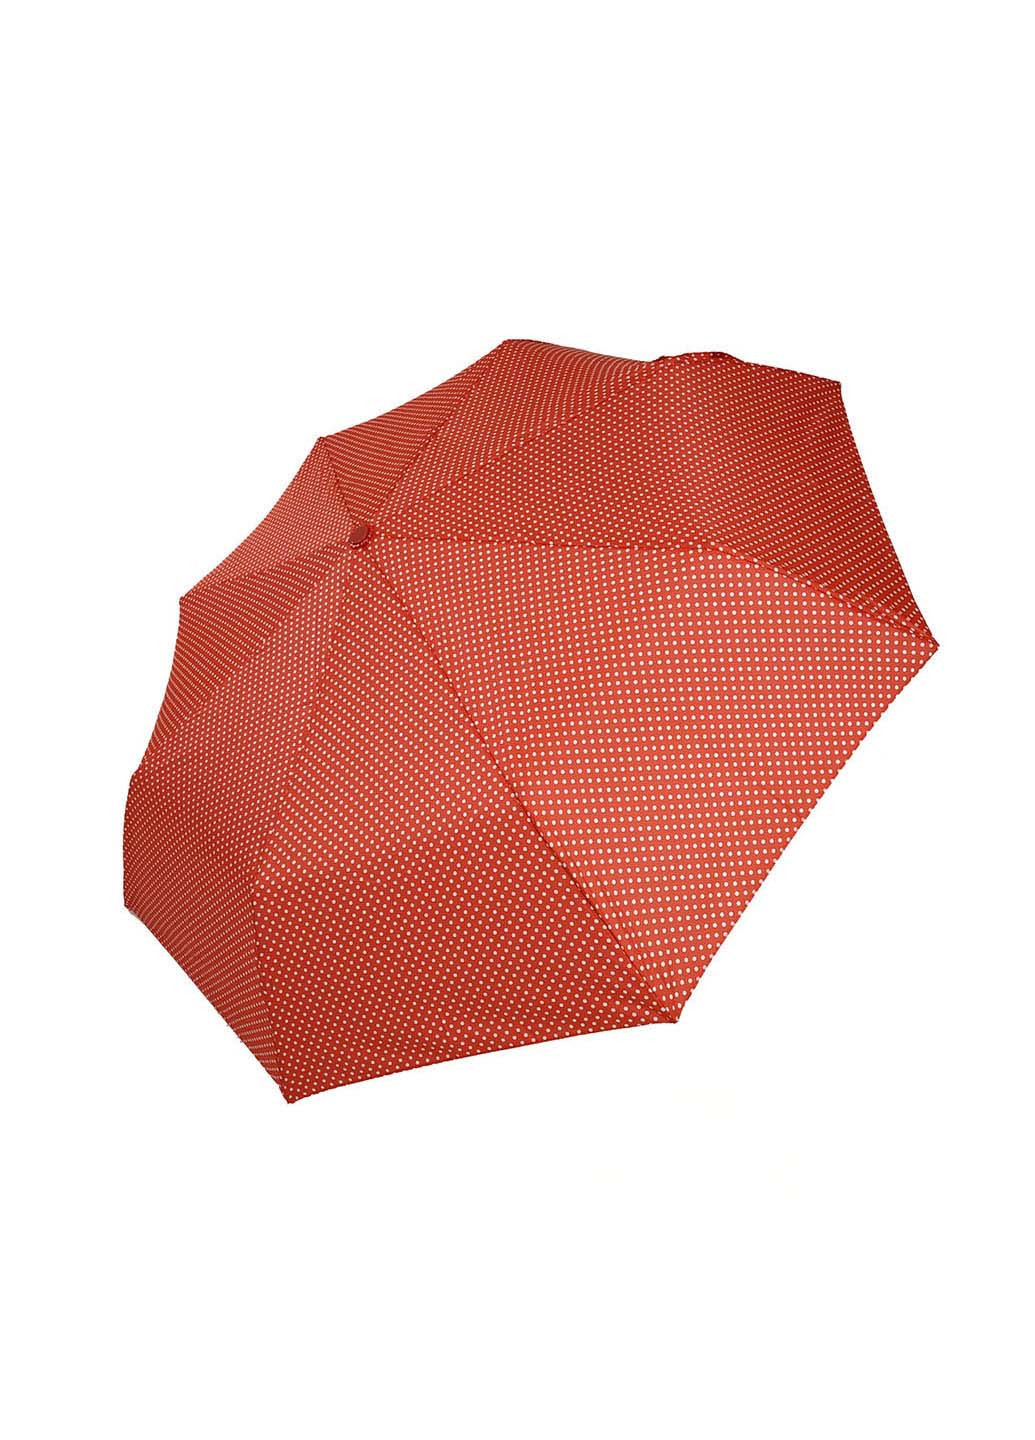 Зонт SL 35013-5 складной красный